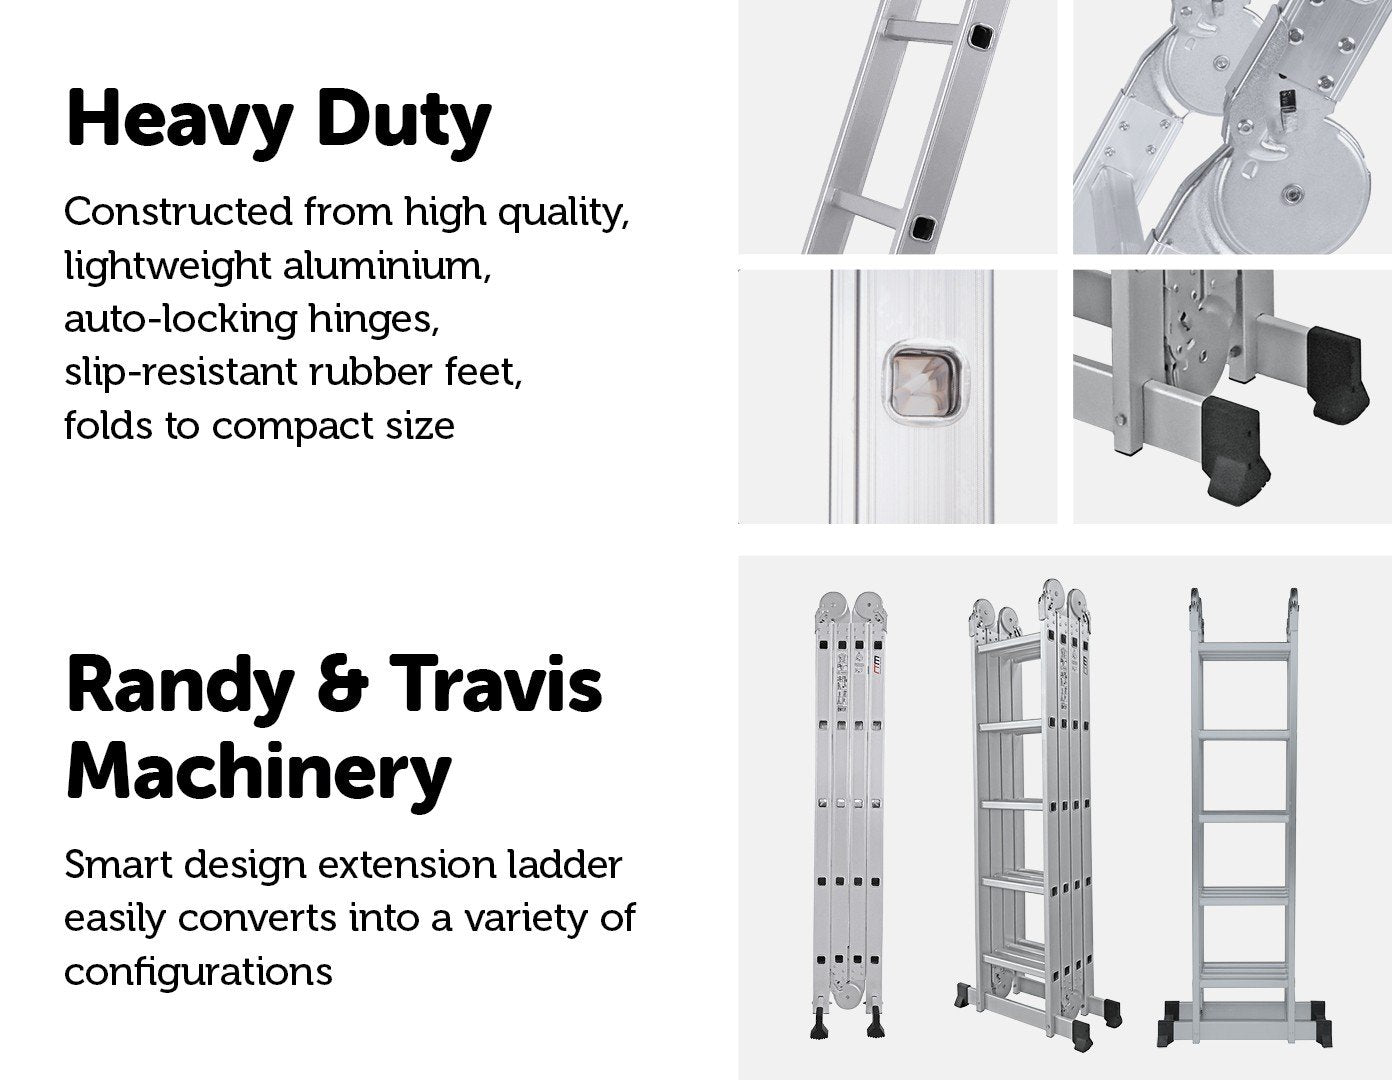 Tools 5.8m Multipurpose Ladder Aluminium